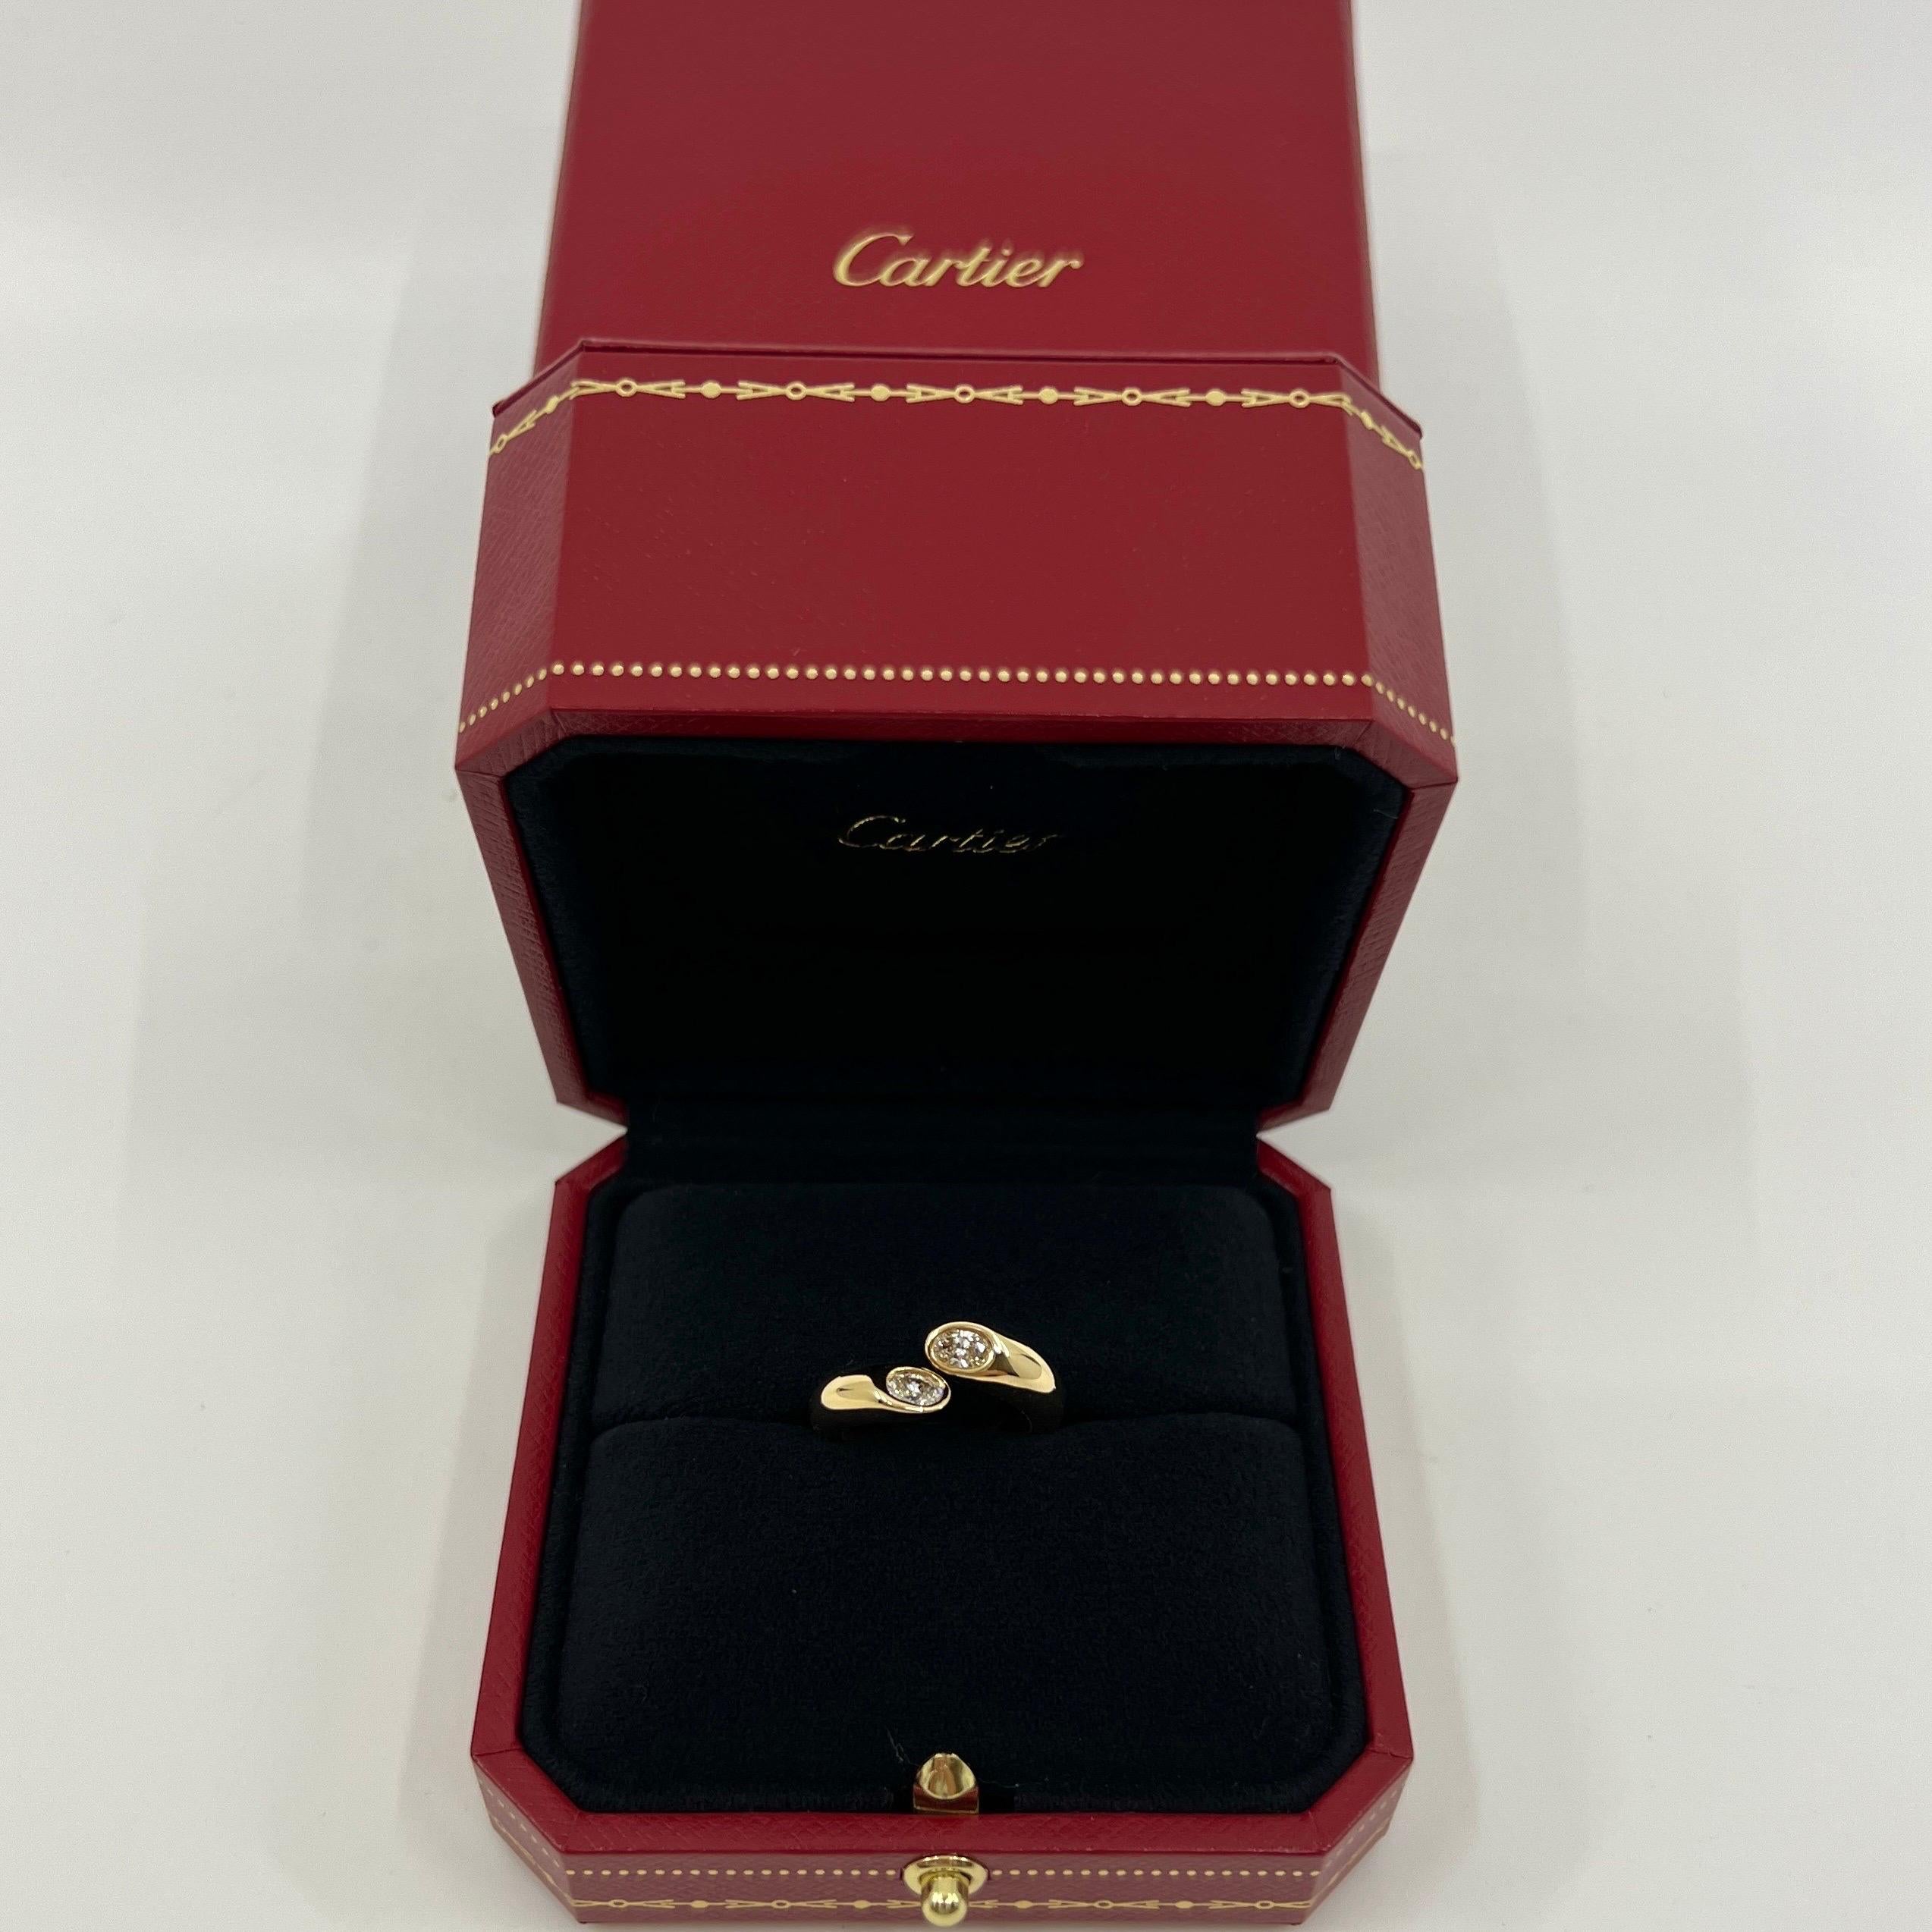 Vintage Cartier Oval Cut Natural Diamond 18k Gelbgold Split Bypass Ring.

Atemberaubender Ring aus Gelbgold, besetzt mit 2 feinen ovalen Diamanten im Brillantschliff. 
Edle Schmuckhäuser wie Cartier verwenden für ihre Stücke nur die feinsten